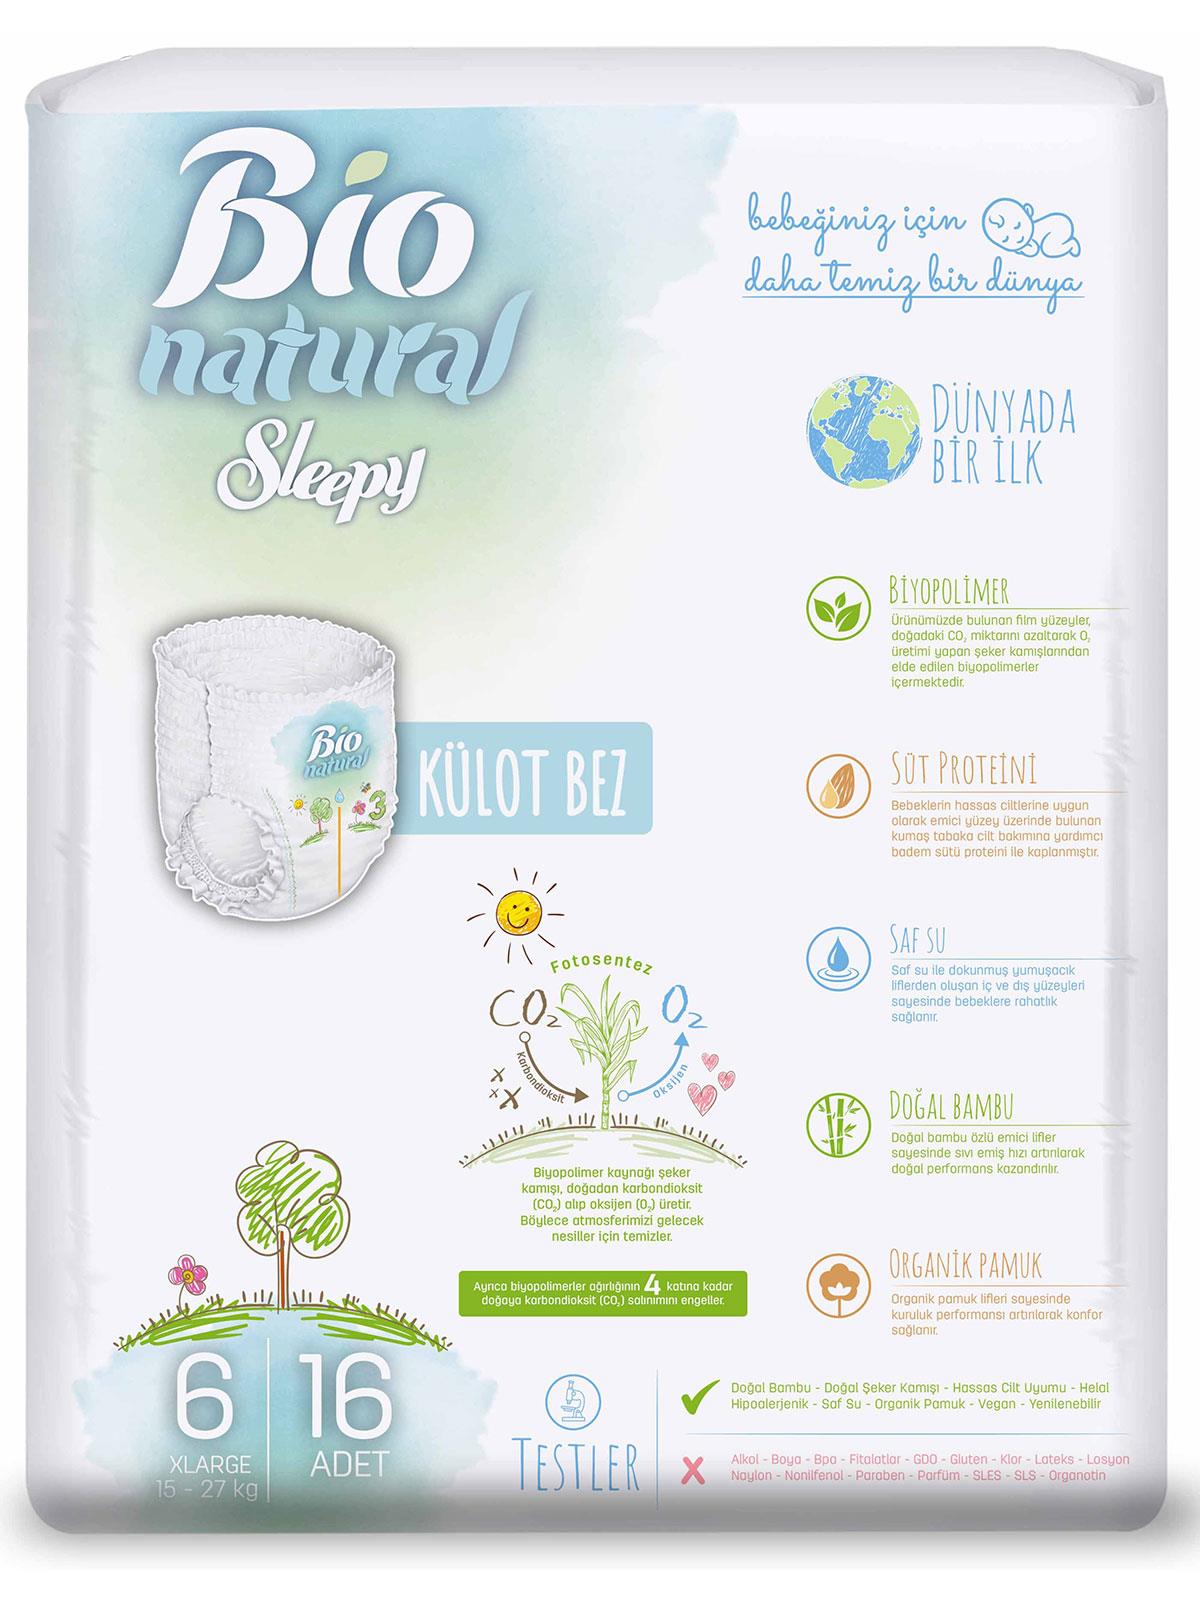 Sleepy Bio Natural Külot Bez 6 Numara XLarge 15-27 kg 16 Adet